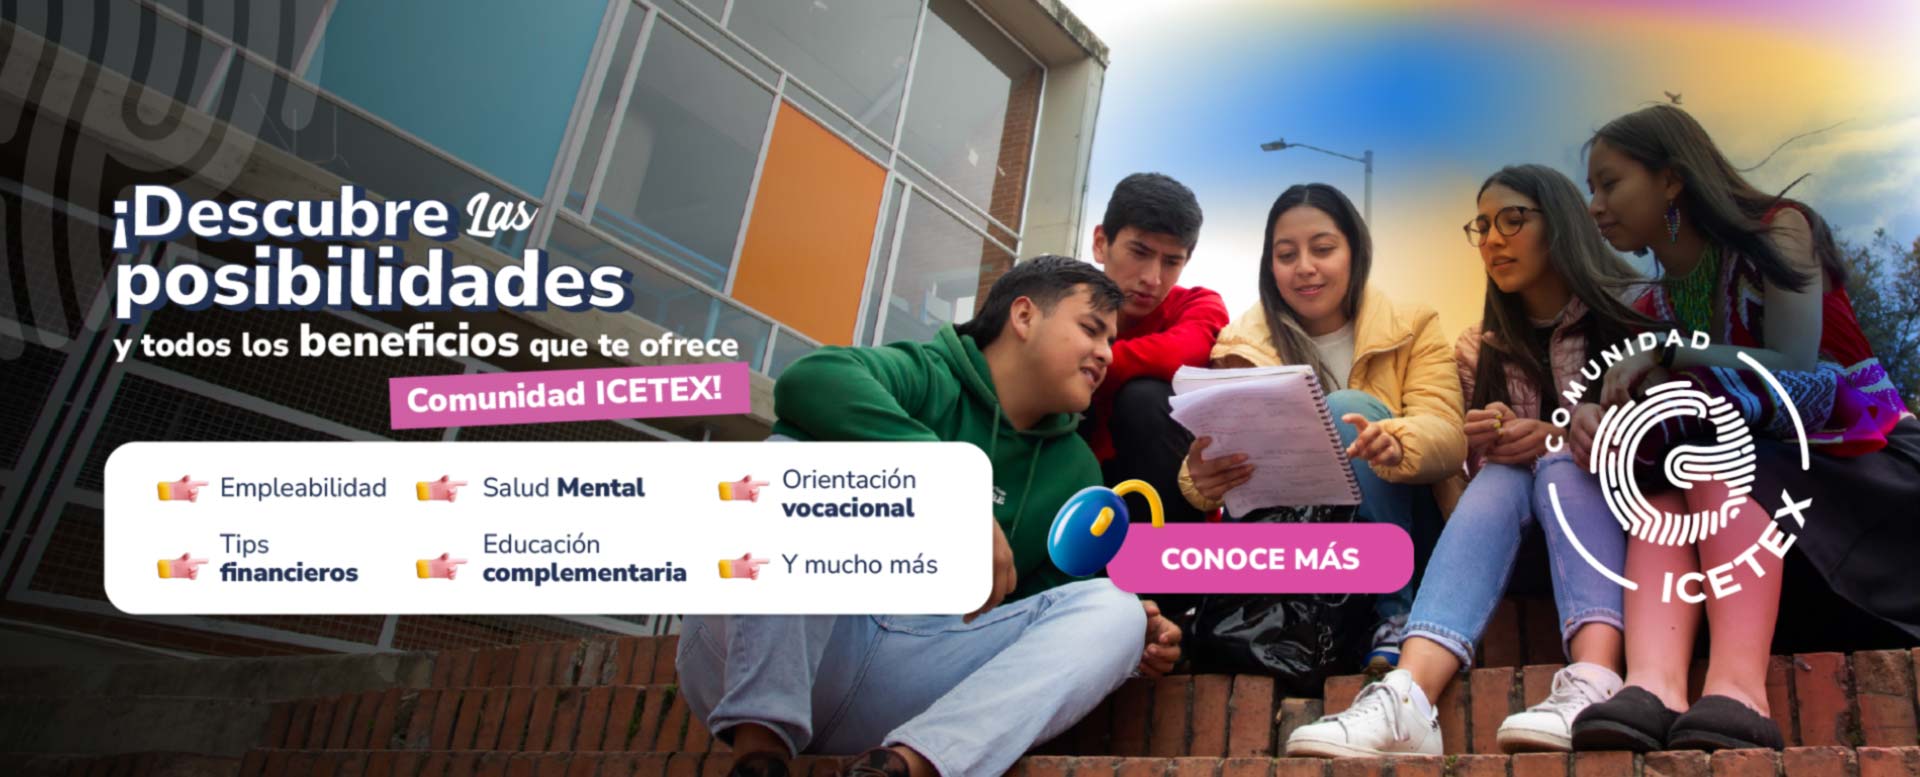 Banner de beneficios que ofrece Comunidad ICETEX